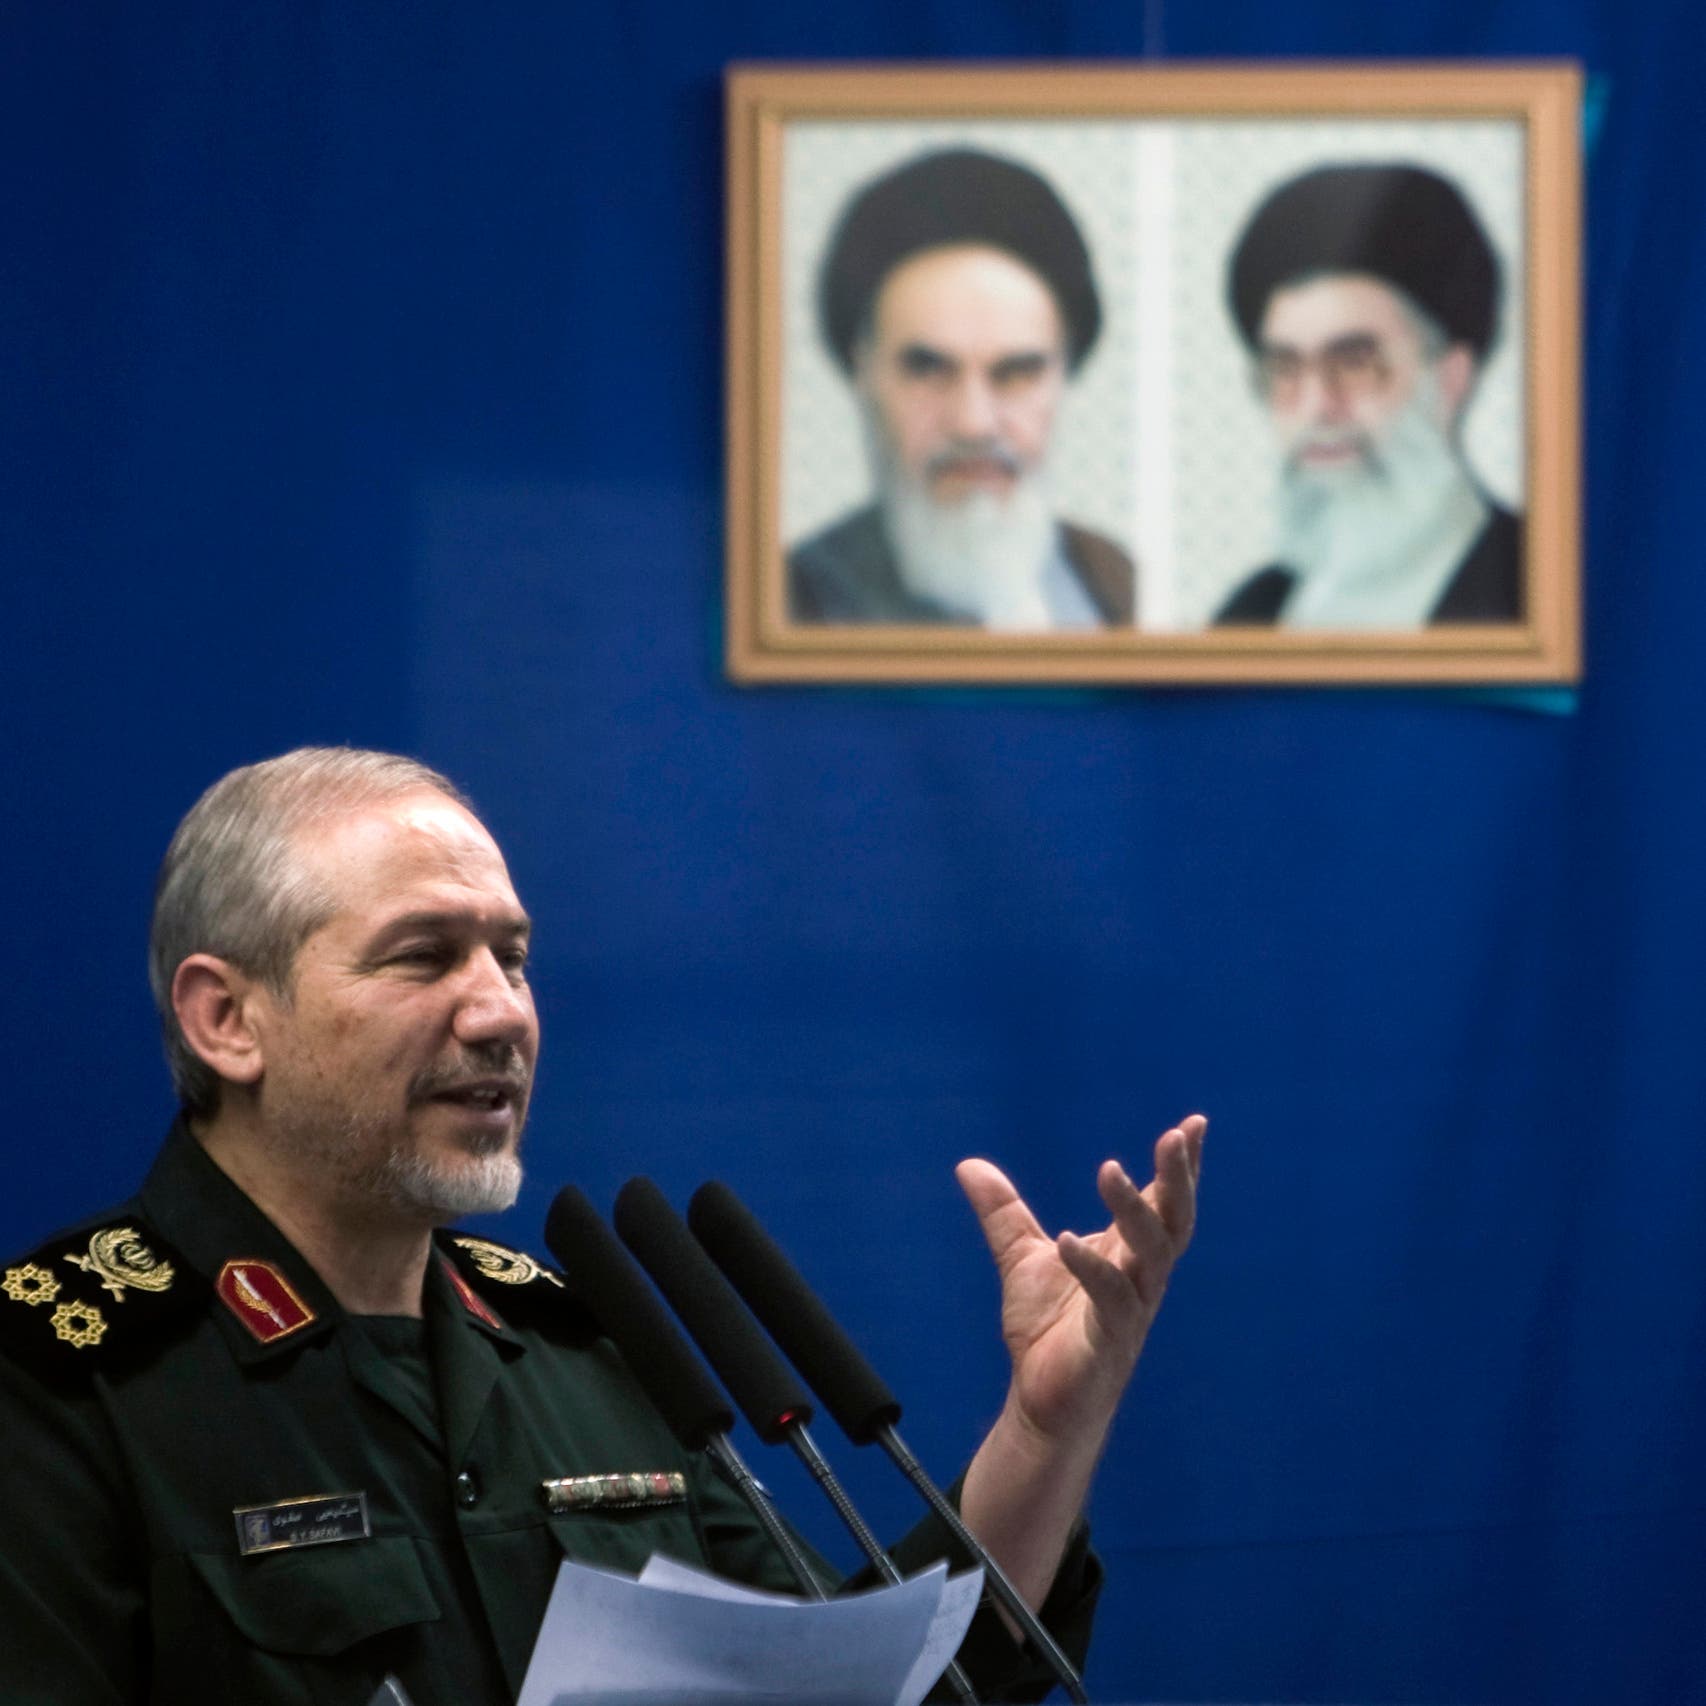 مستشار خامنئي يتحدث عن "حقبة جديدة" في سياسة إيران الخارجية